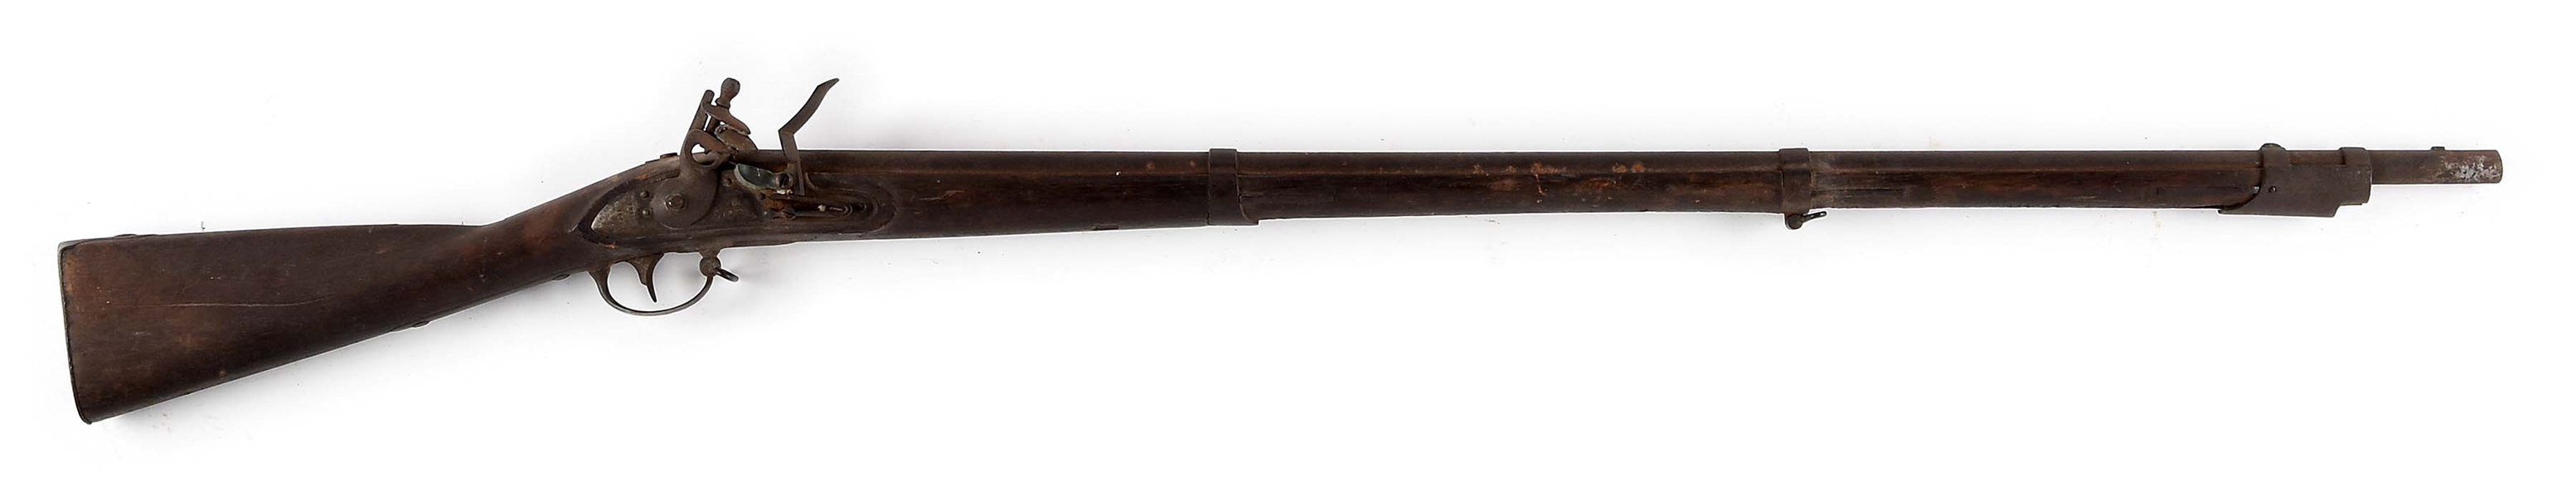 (A) U.S. MODEL 1816 FLINTLOCK MUSKET BY WICKHAM OF PHILADELPHIA.